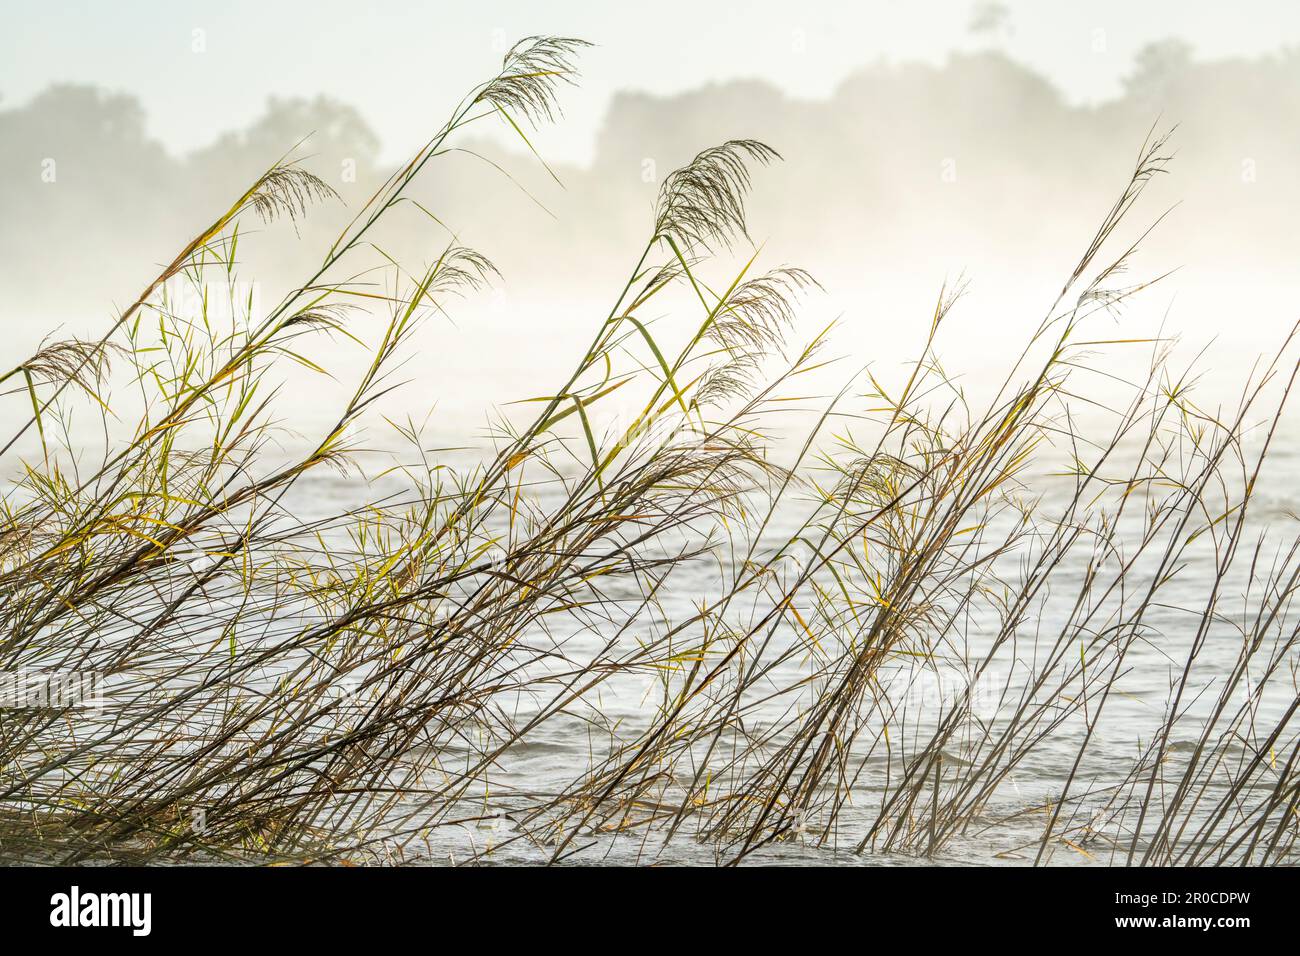 Mist rising above the water surface of the Zambezi River. Papyrus plants stand in the water. Zambezi River, Victoria Falls, Zimbabwe Stock Photo